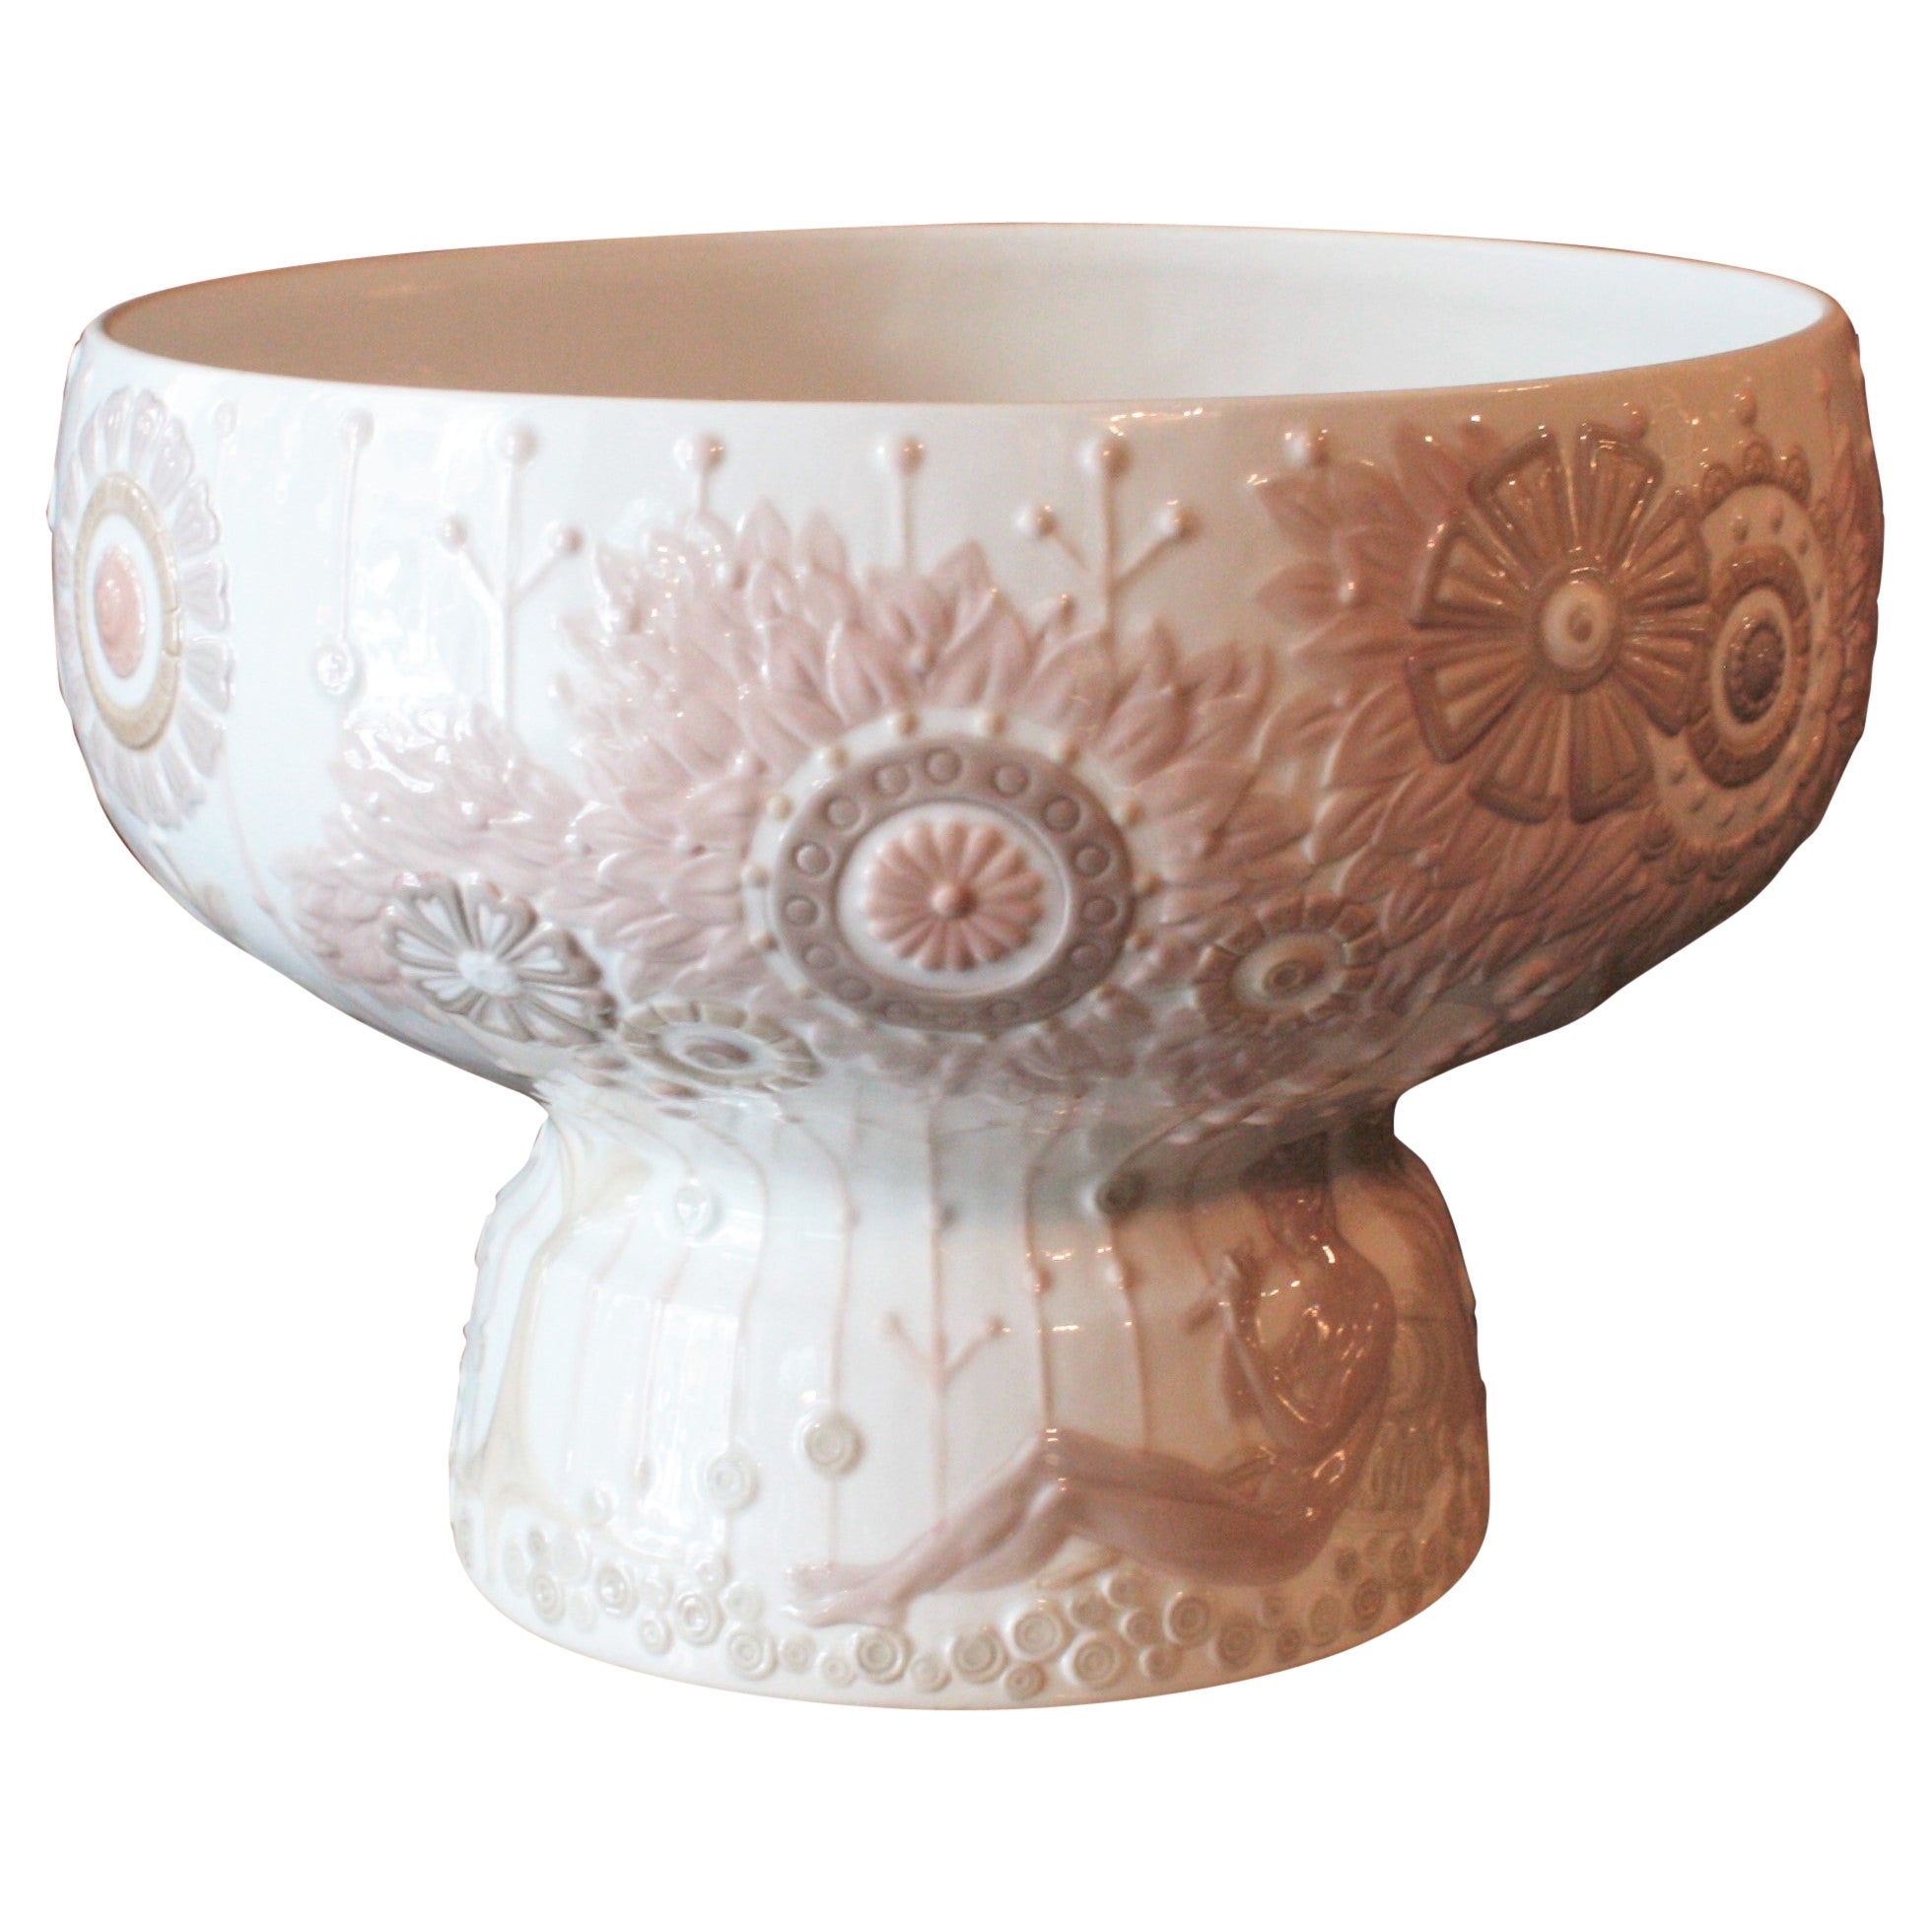 Grand vase de centre de table floral en porcelaine espagnole Lladro